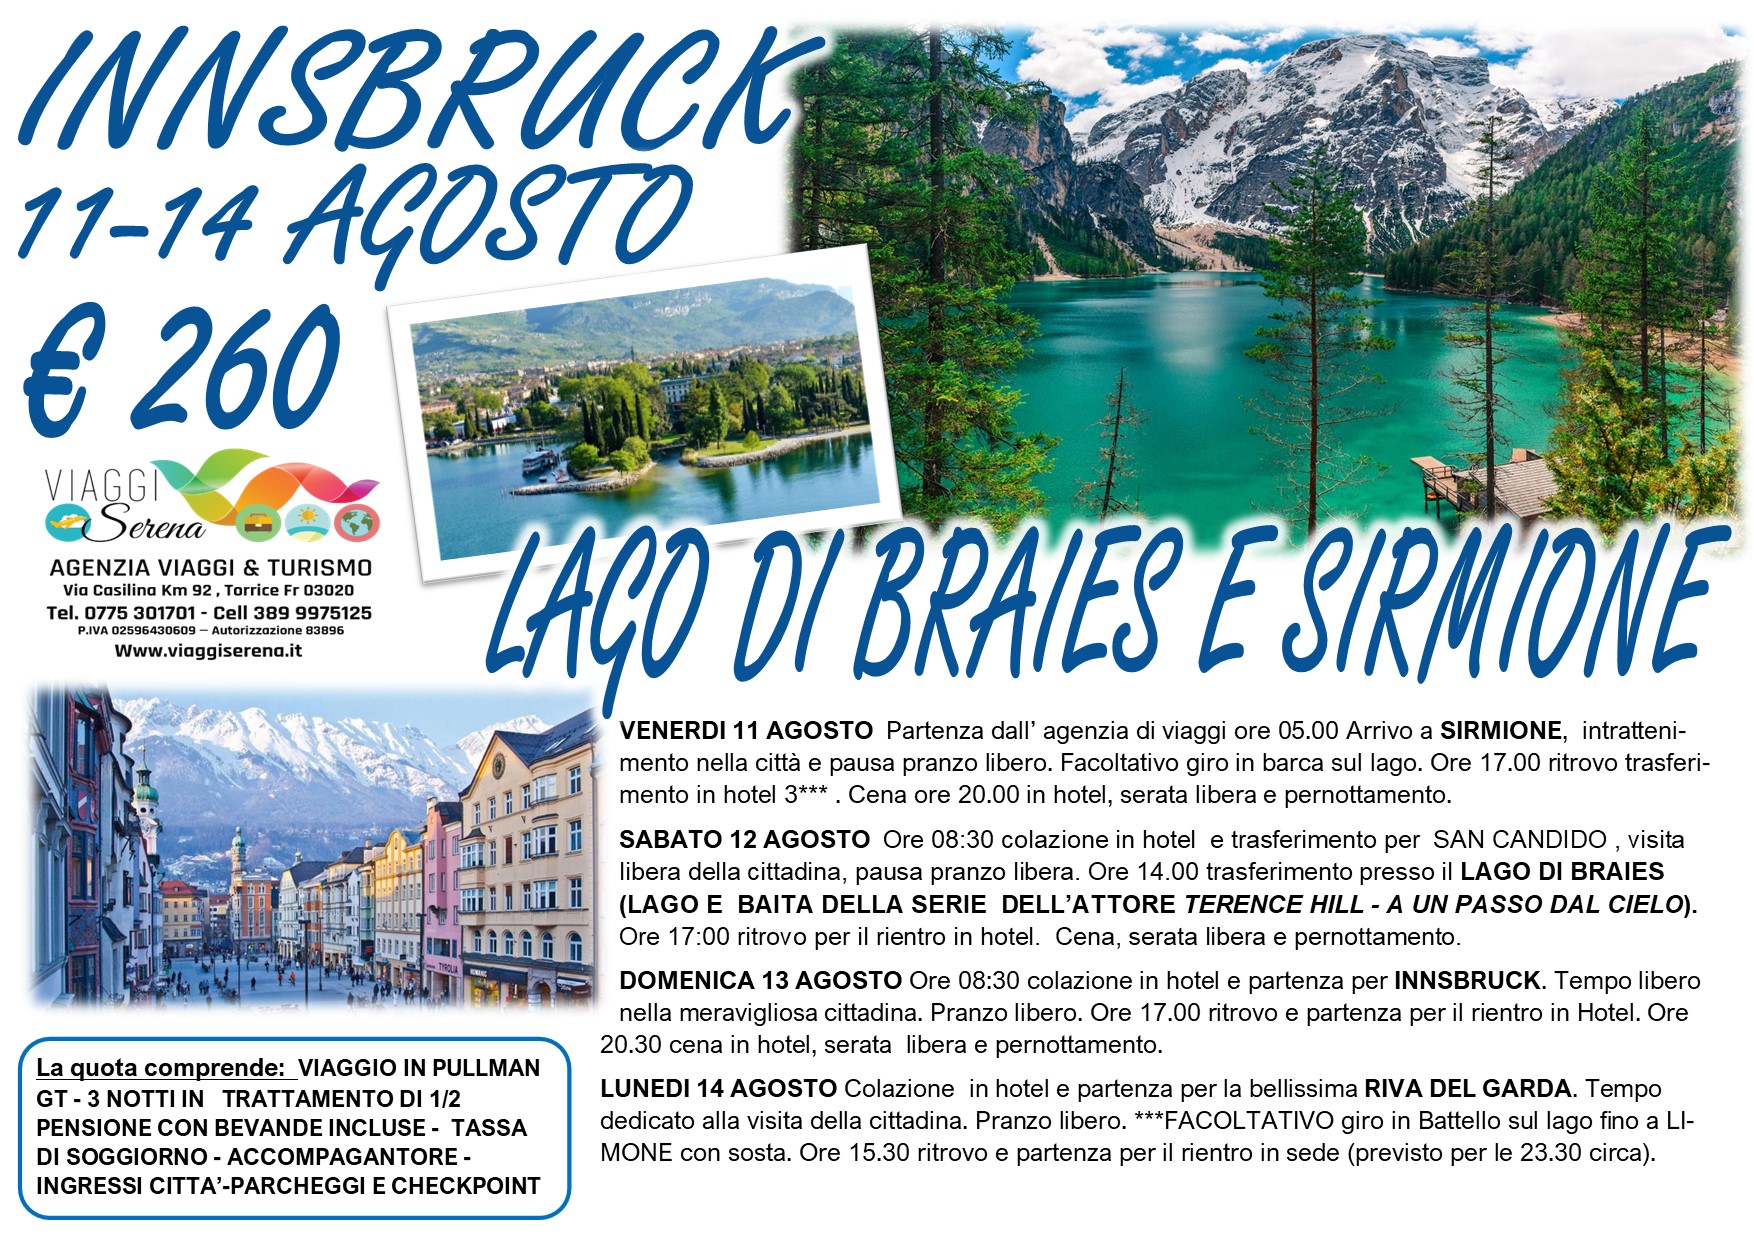 Viaggi di Gruppo: Innsbruck , Lago di Braies, Sirmione & Riva del Garda 11-12-13-14 Agosto € 260,00